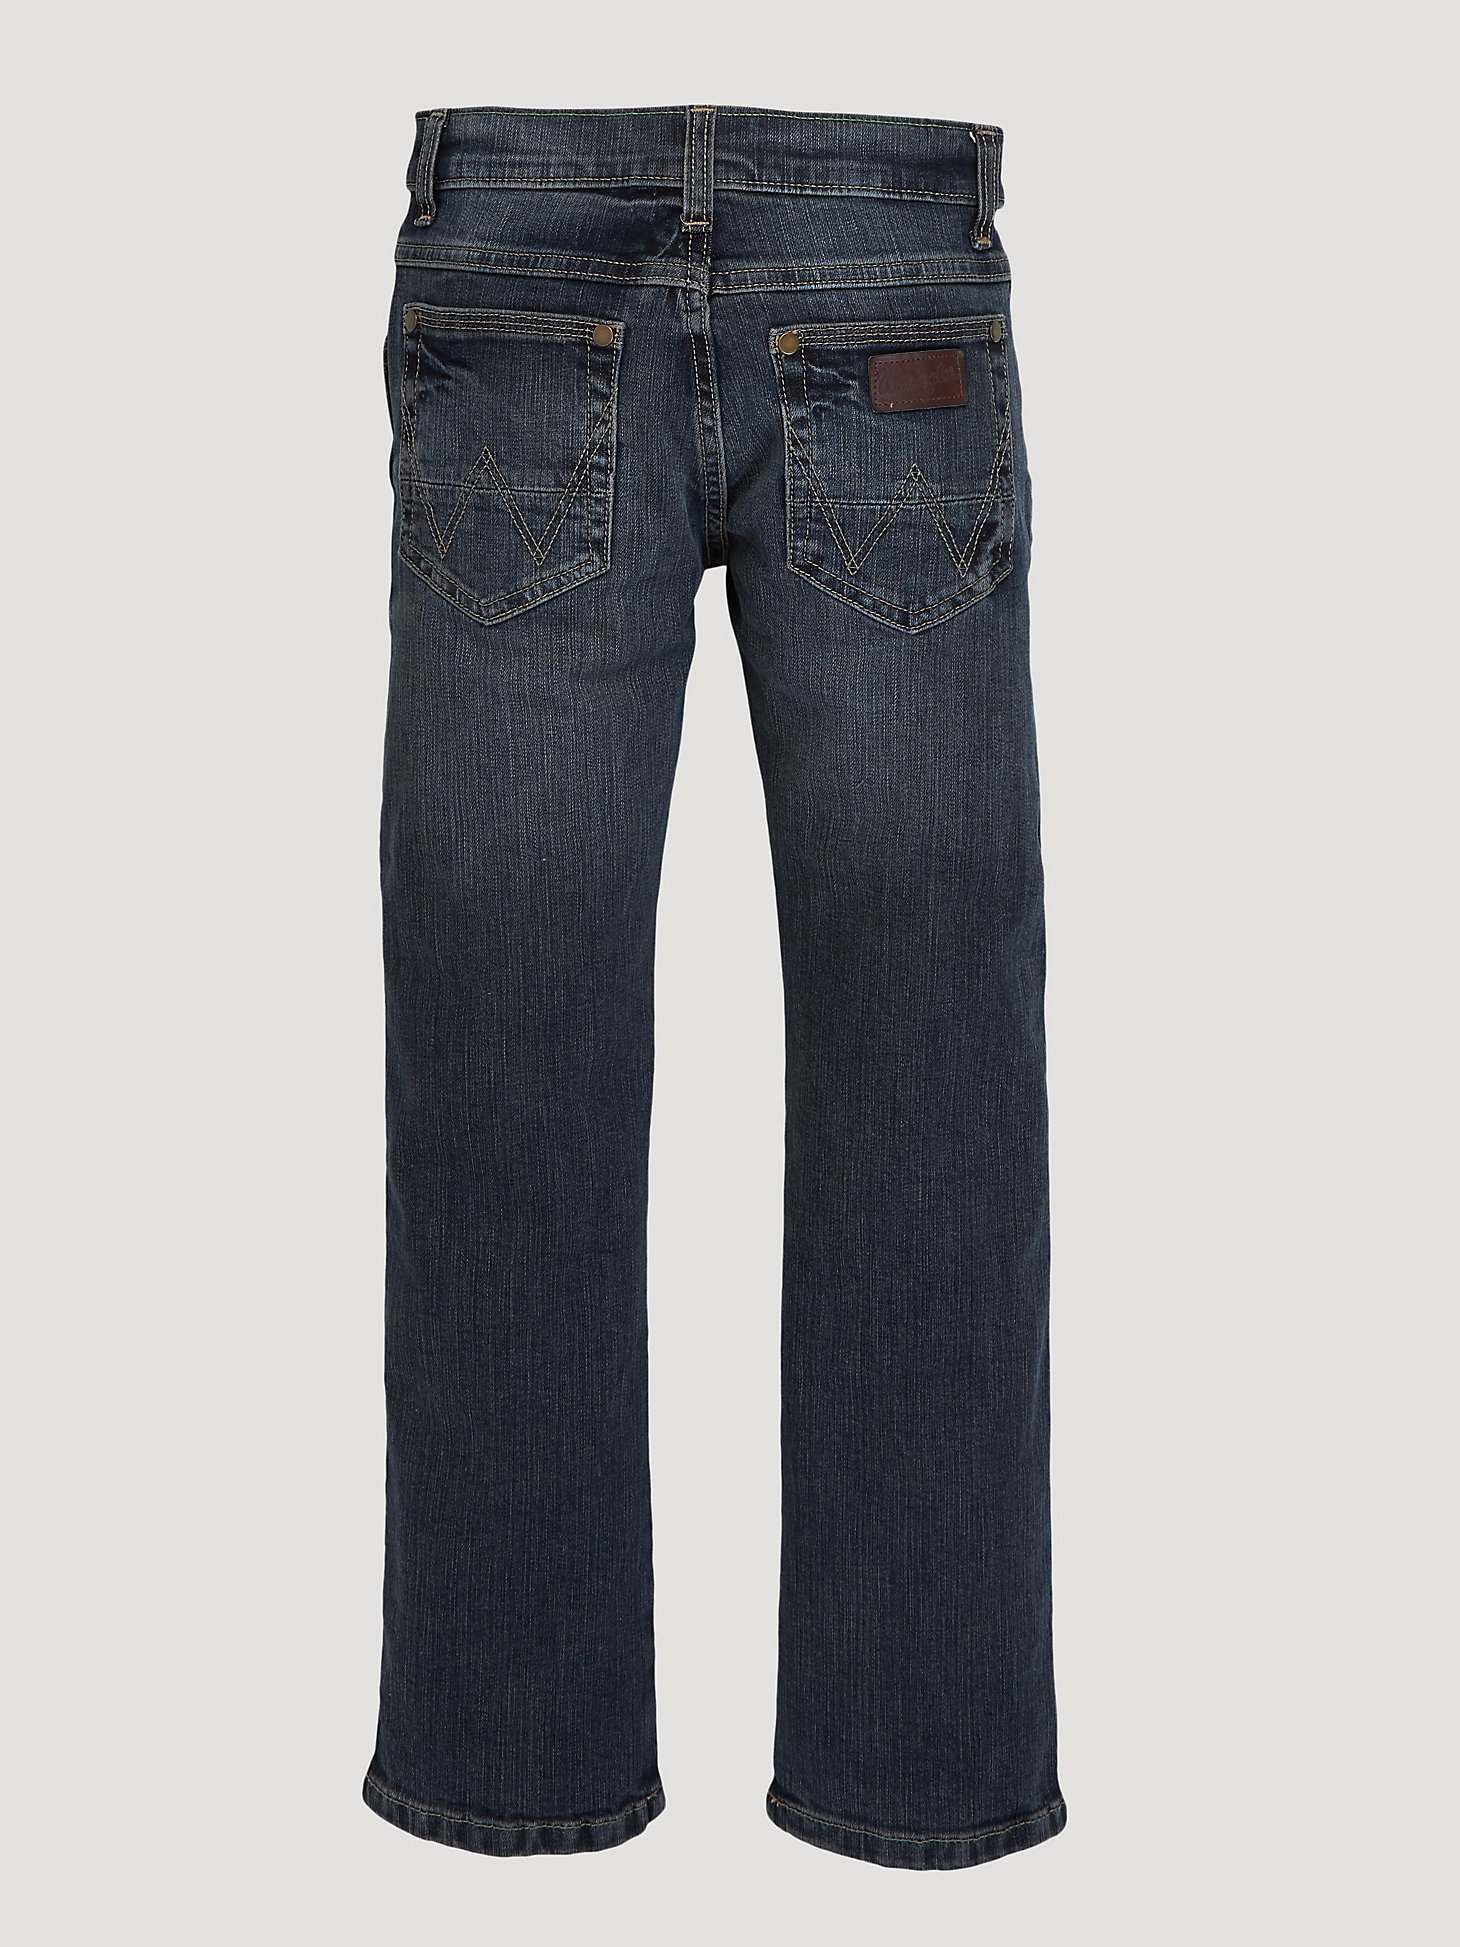 Boy's Wrangler Retro® Slim Straight Jean (4-7) in Jerome alternative view 1